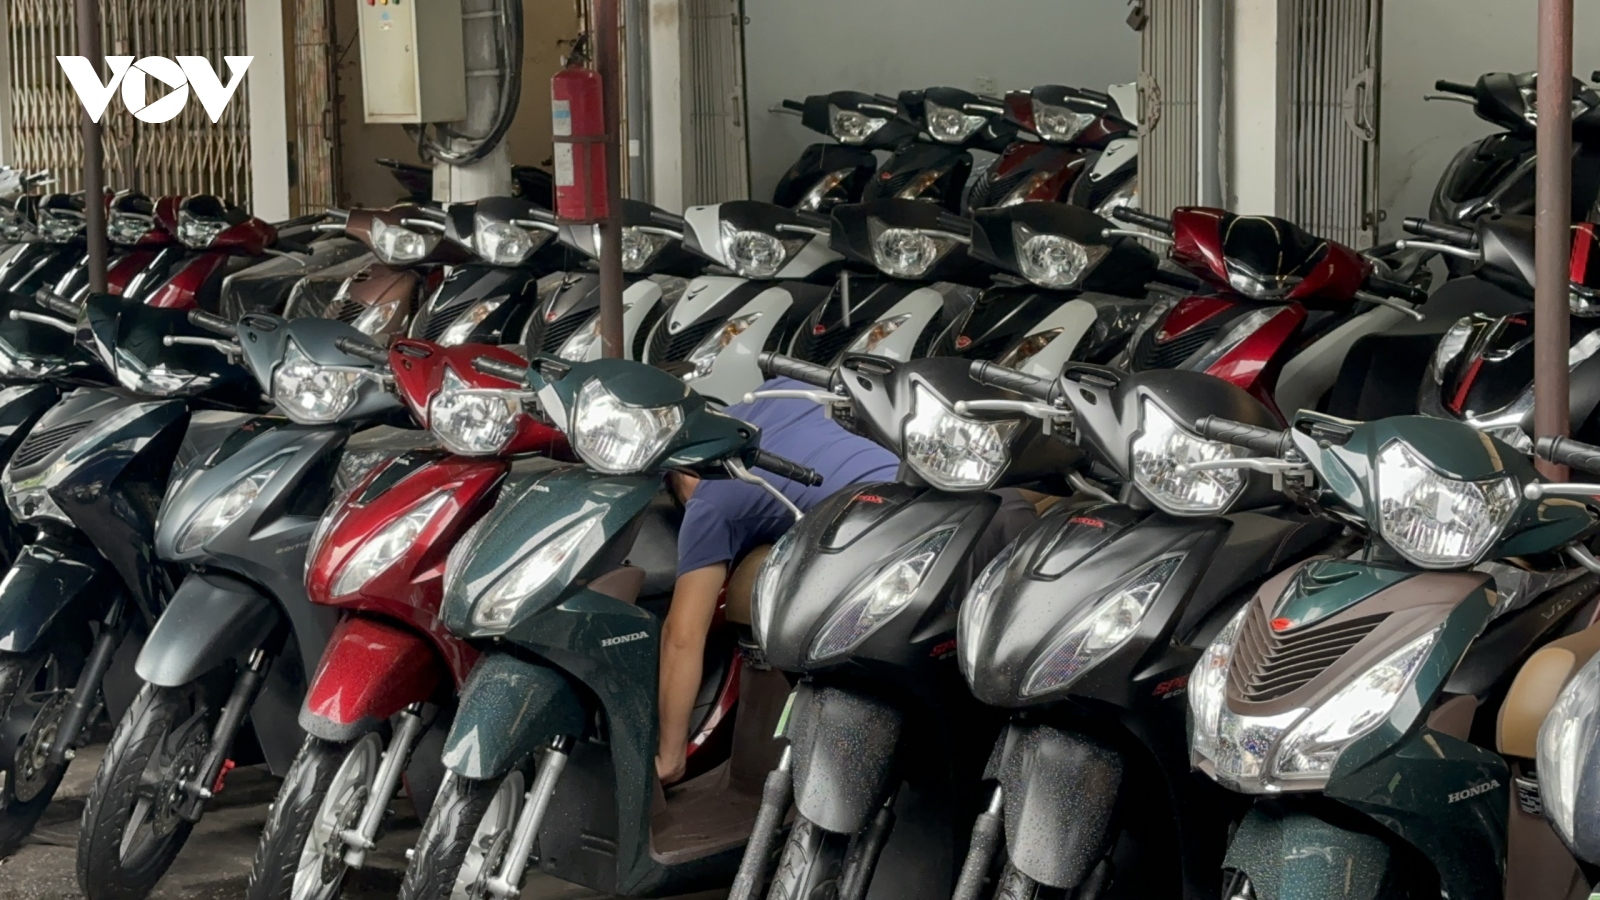 Thị trường xe máy cũ ế ẩm: Dân buôn "ngáp vặt”, lướt điện thoại đợi khách